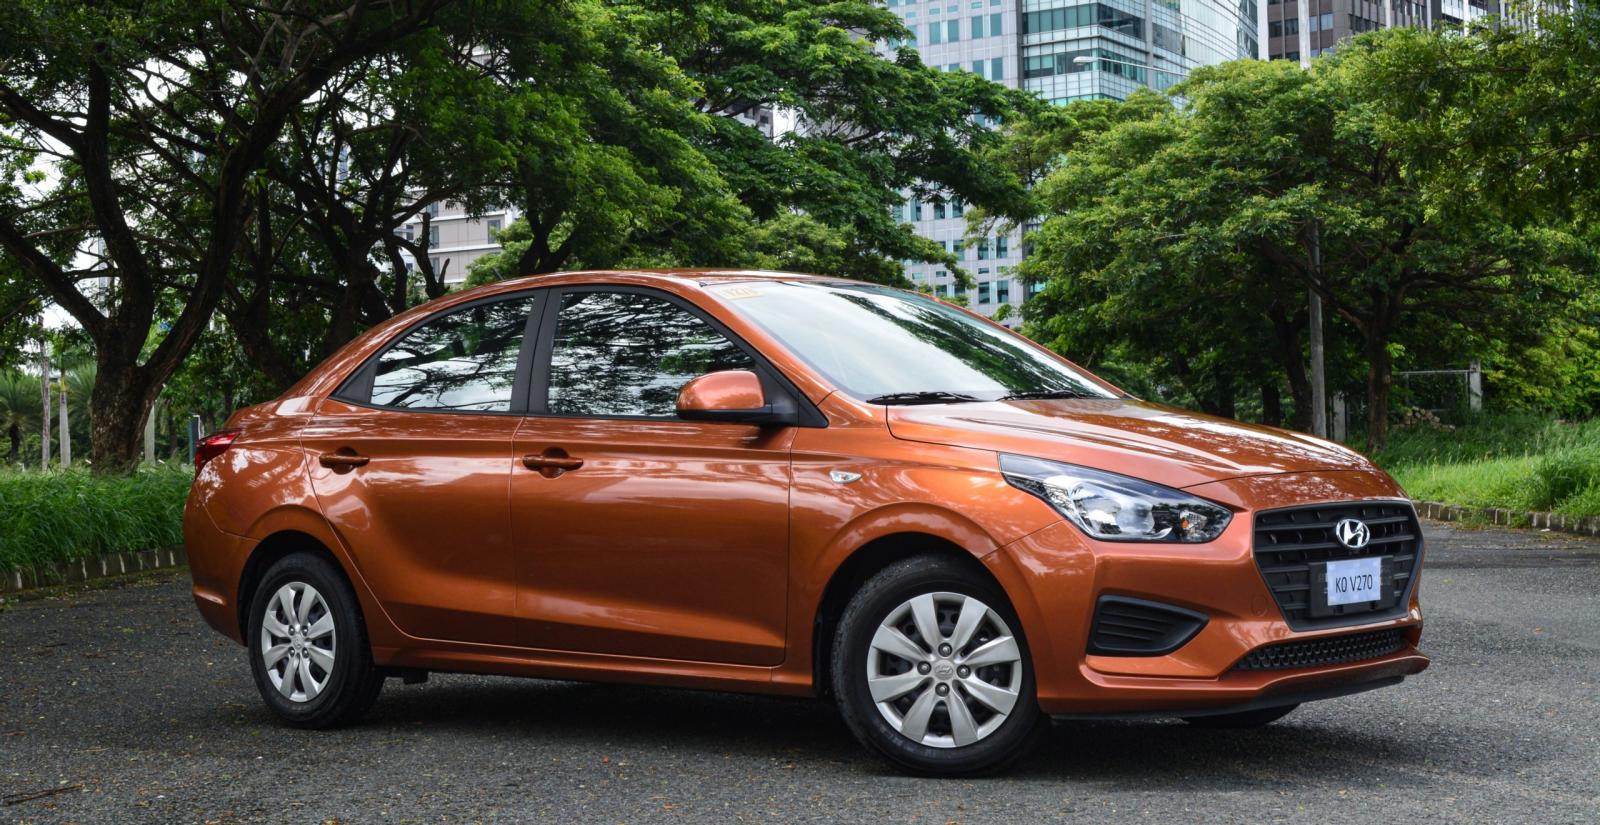 Hyundai Reina fuel efficient